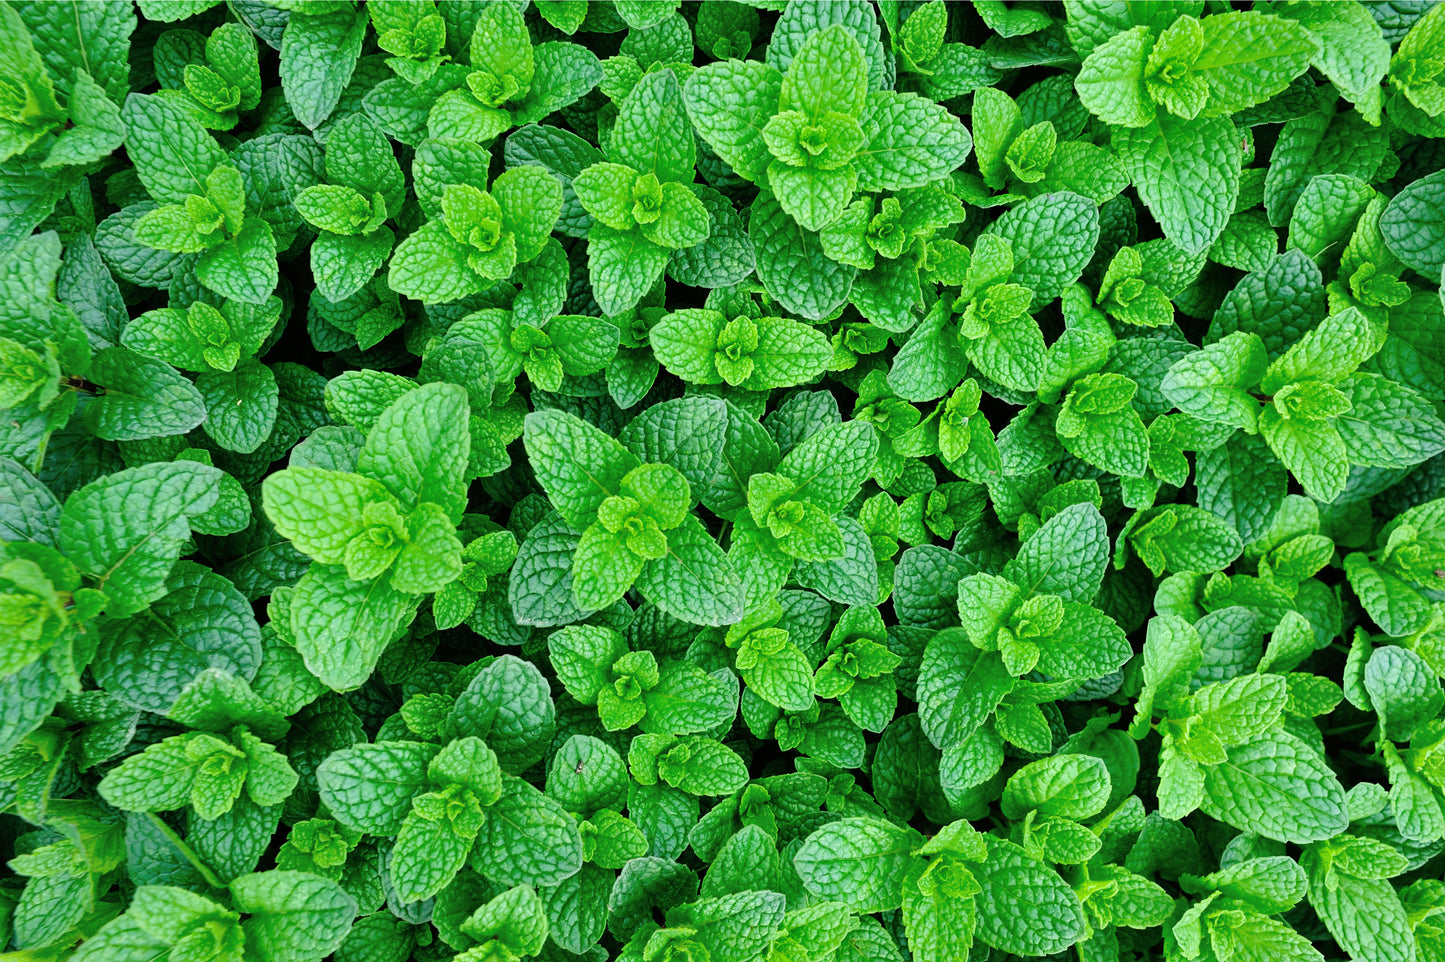 Herb Plants - Garden Mint - 3 x Full Plants in 9cm Pots